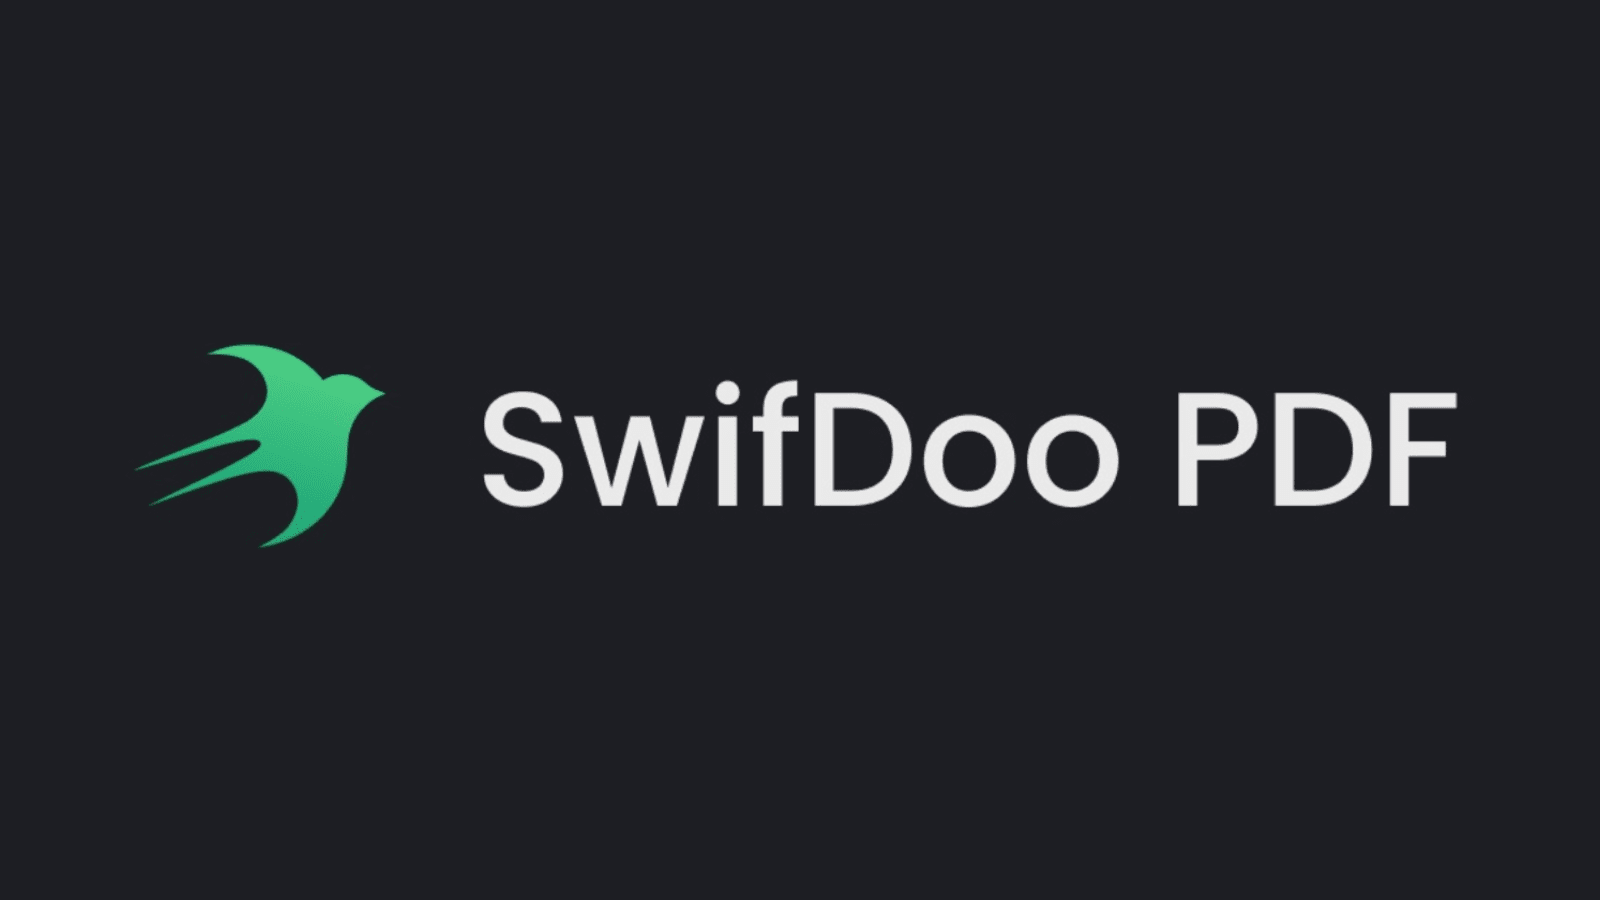 Logotipo do programa swifdoo, convertor e editor de arquivos em pdf.